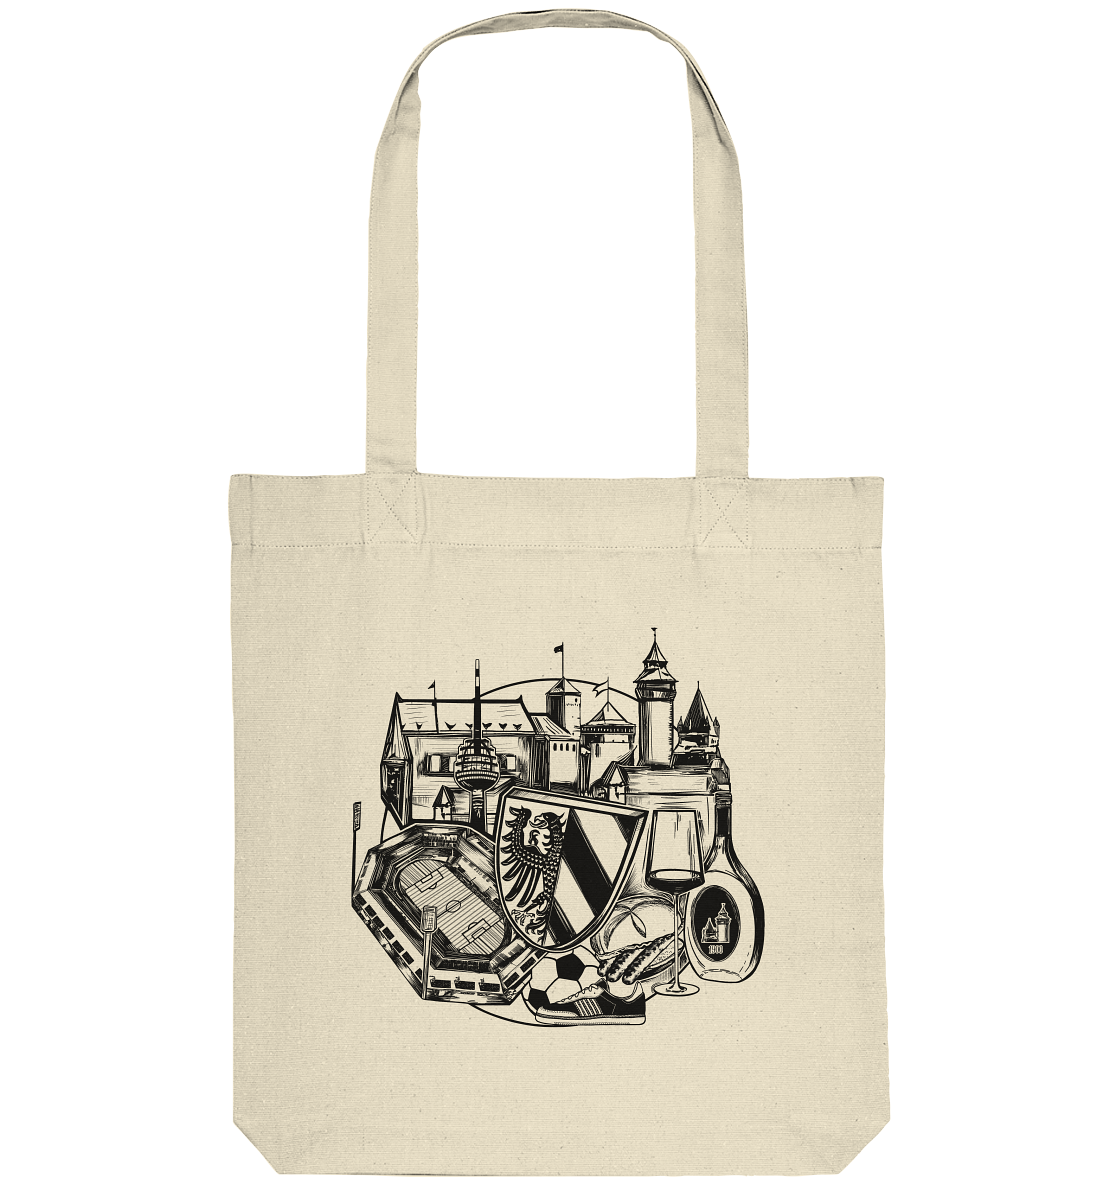 Authentic Tote Bag "Nuremberg" - Organic Tote Bag